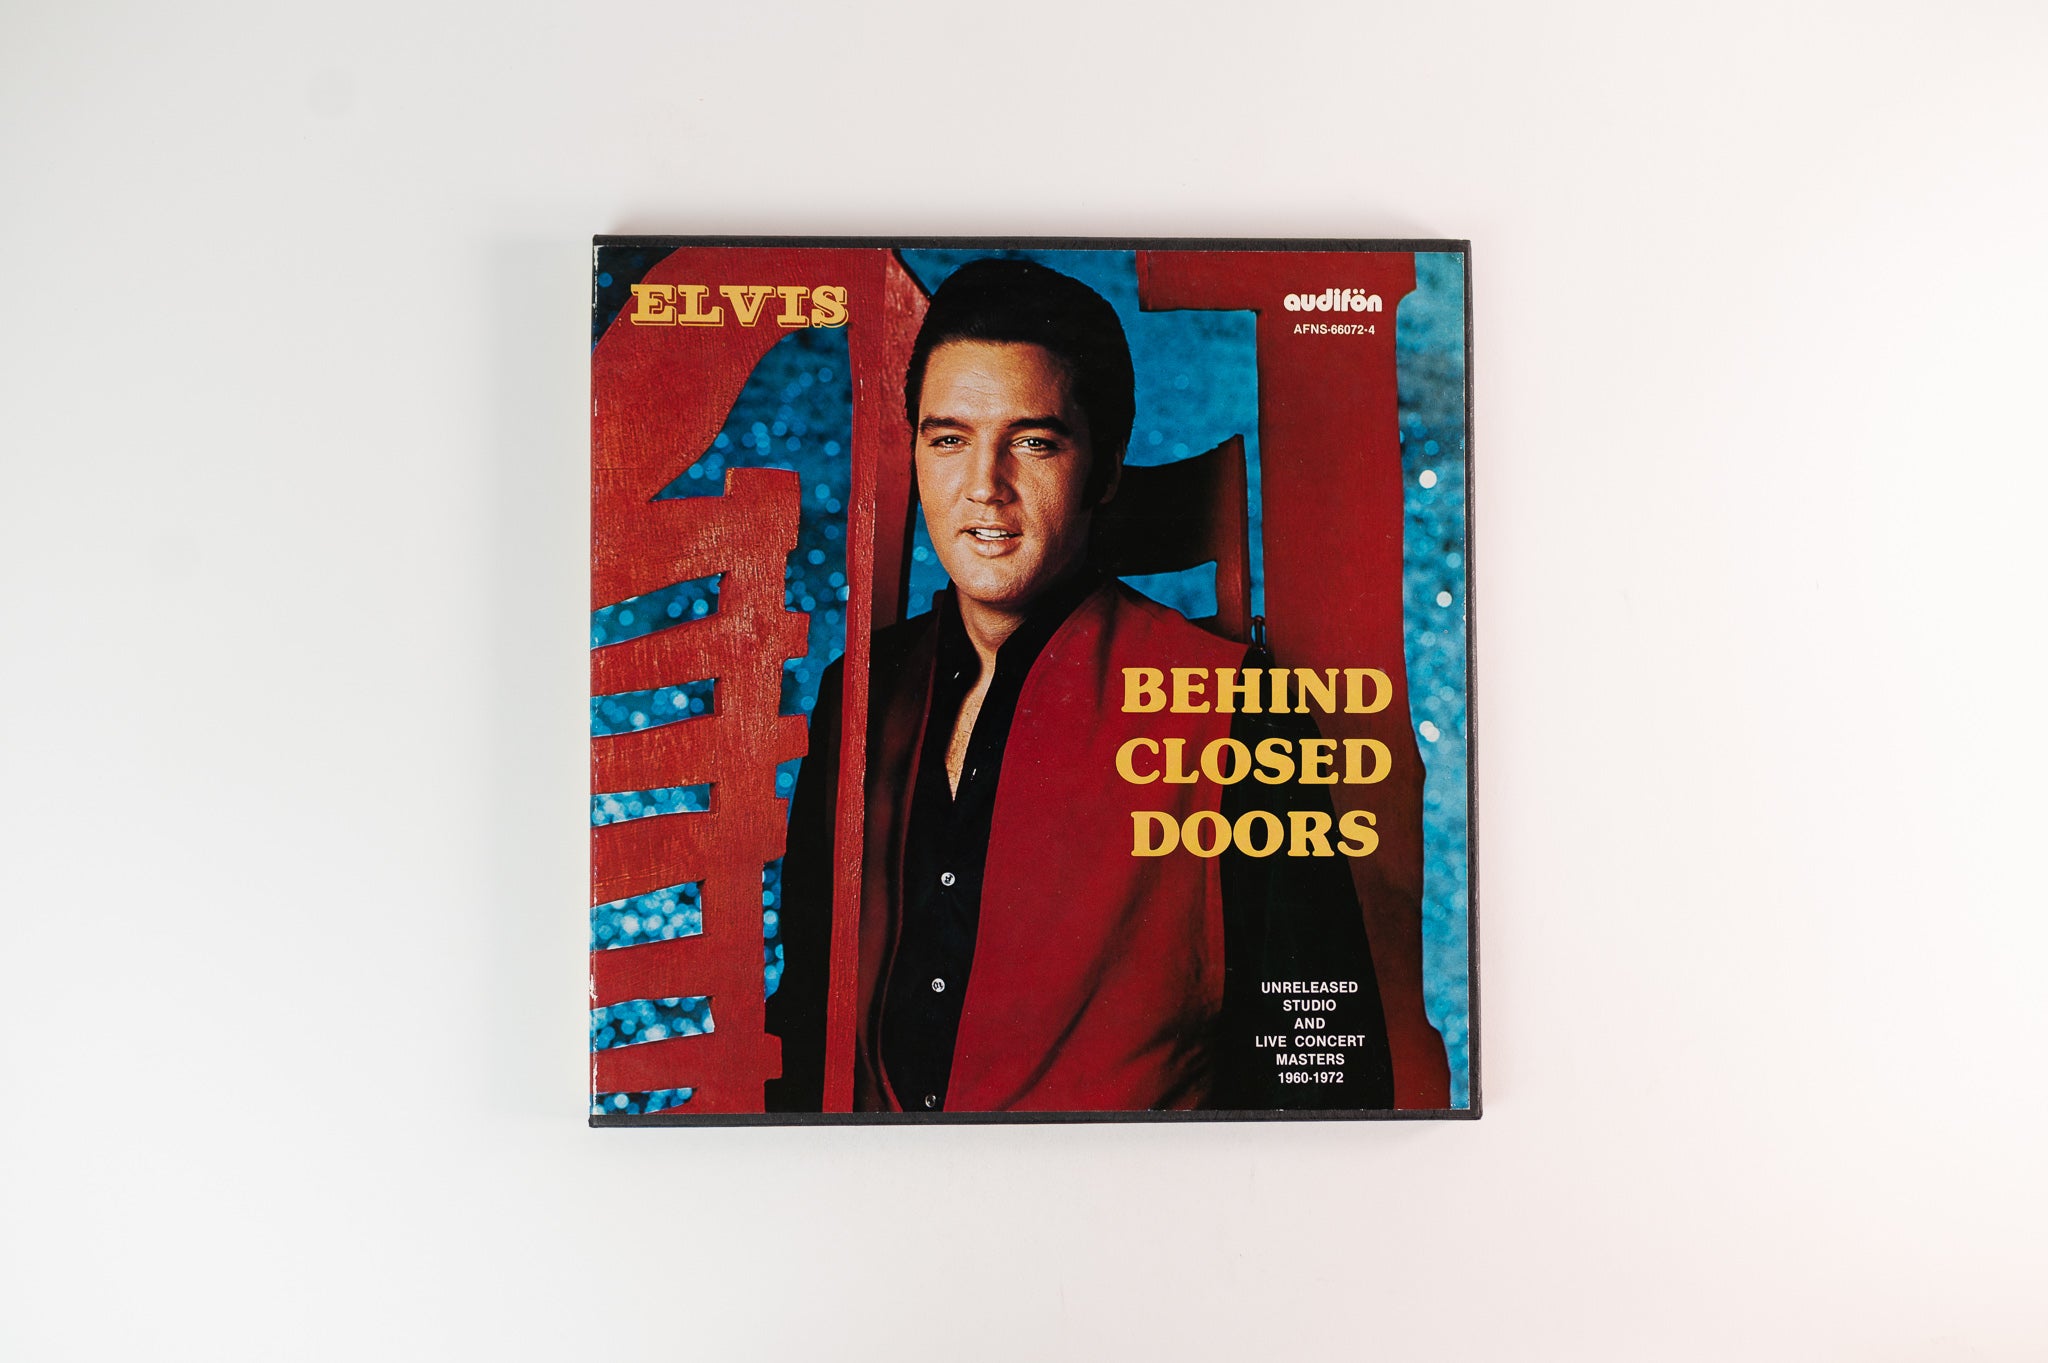 Elvis Presley - Behind Closed Doors on Audifon Box Set Unoffical Release